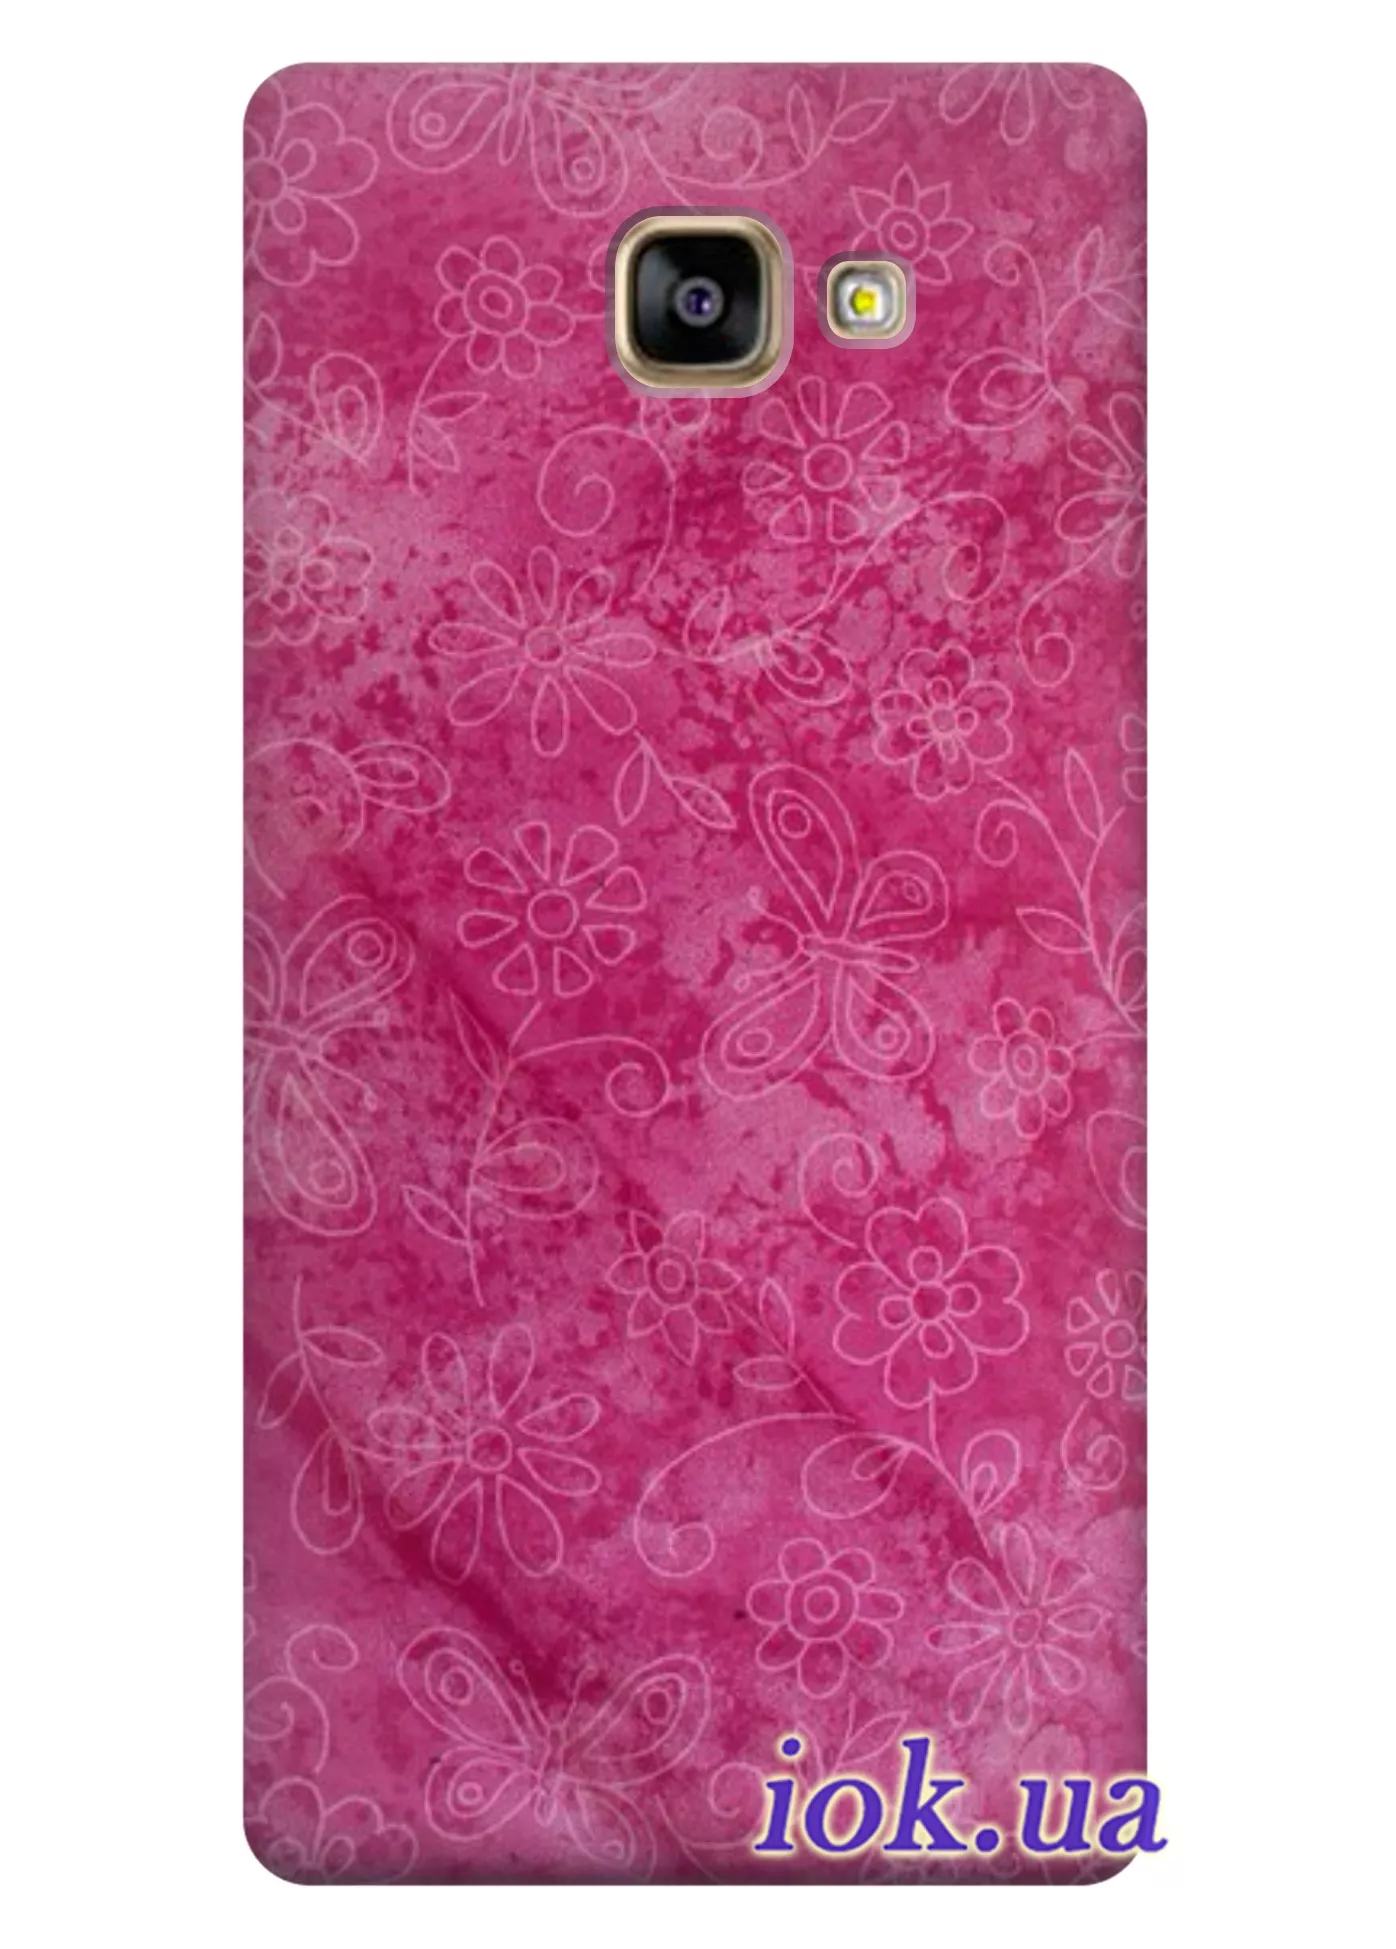 Чехол для Galaxy A5 (2016) - Розовые обои